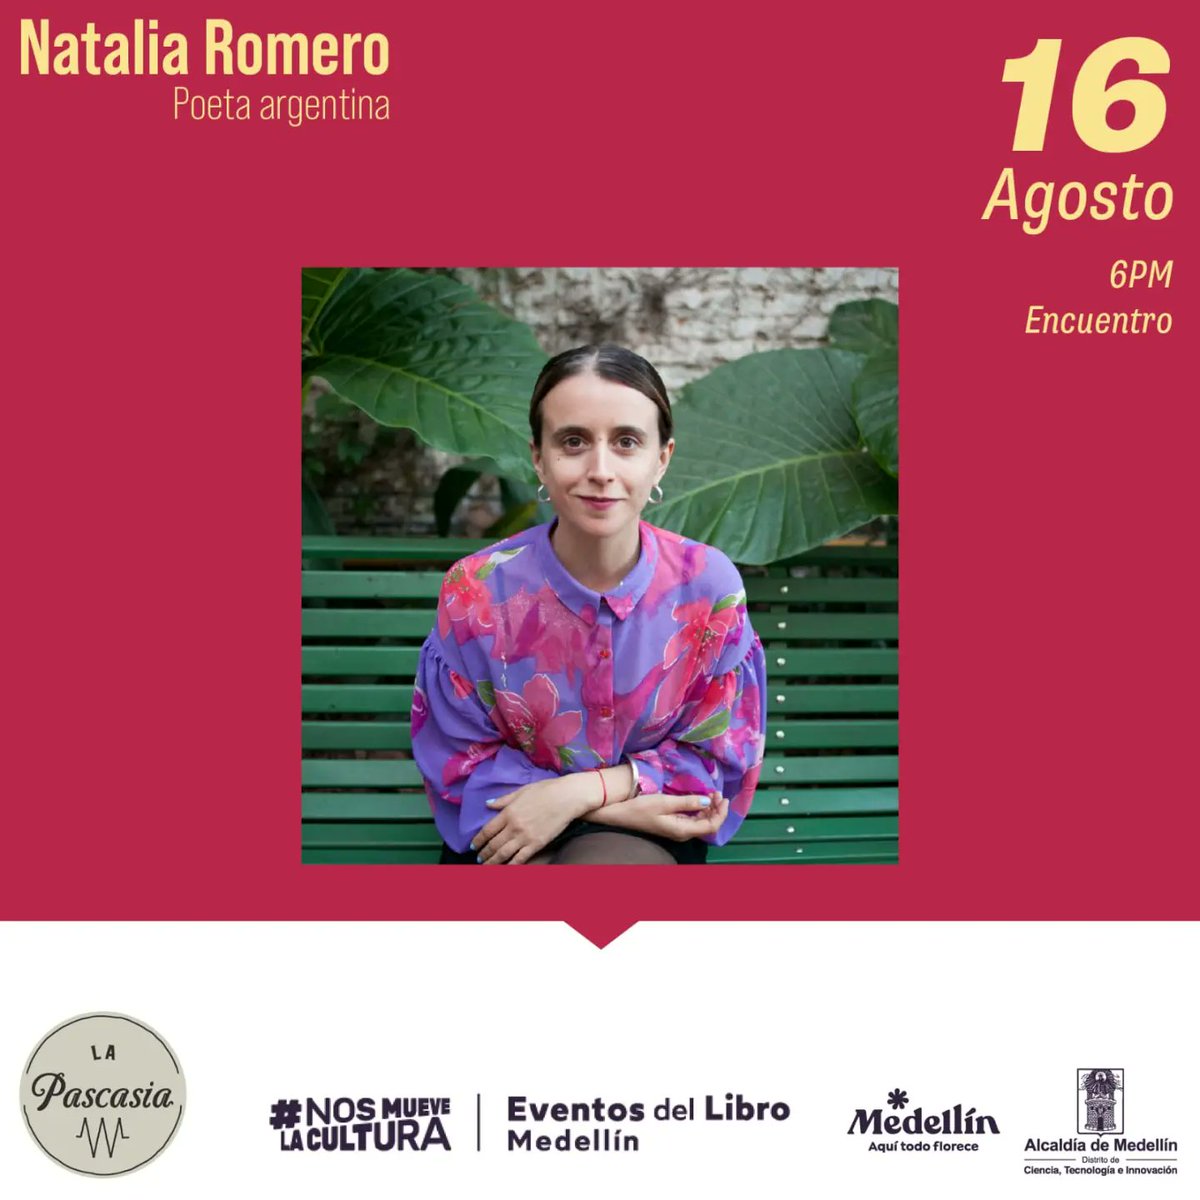 El club de lectura de @Lapascasia mañana tendrá una conversación abierta al público con la escritora argentina Natalia Romero 🤍📚